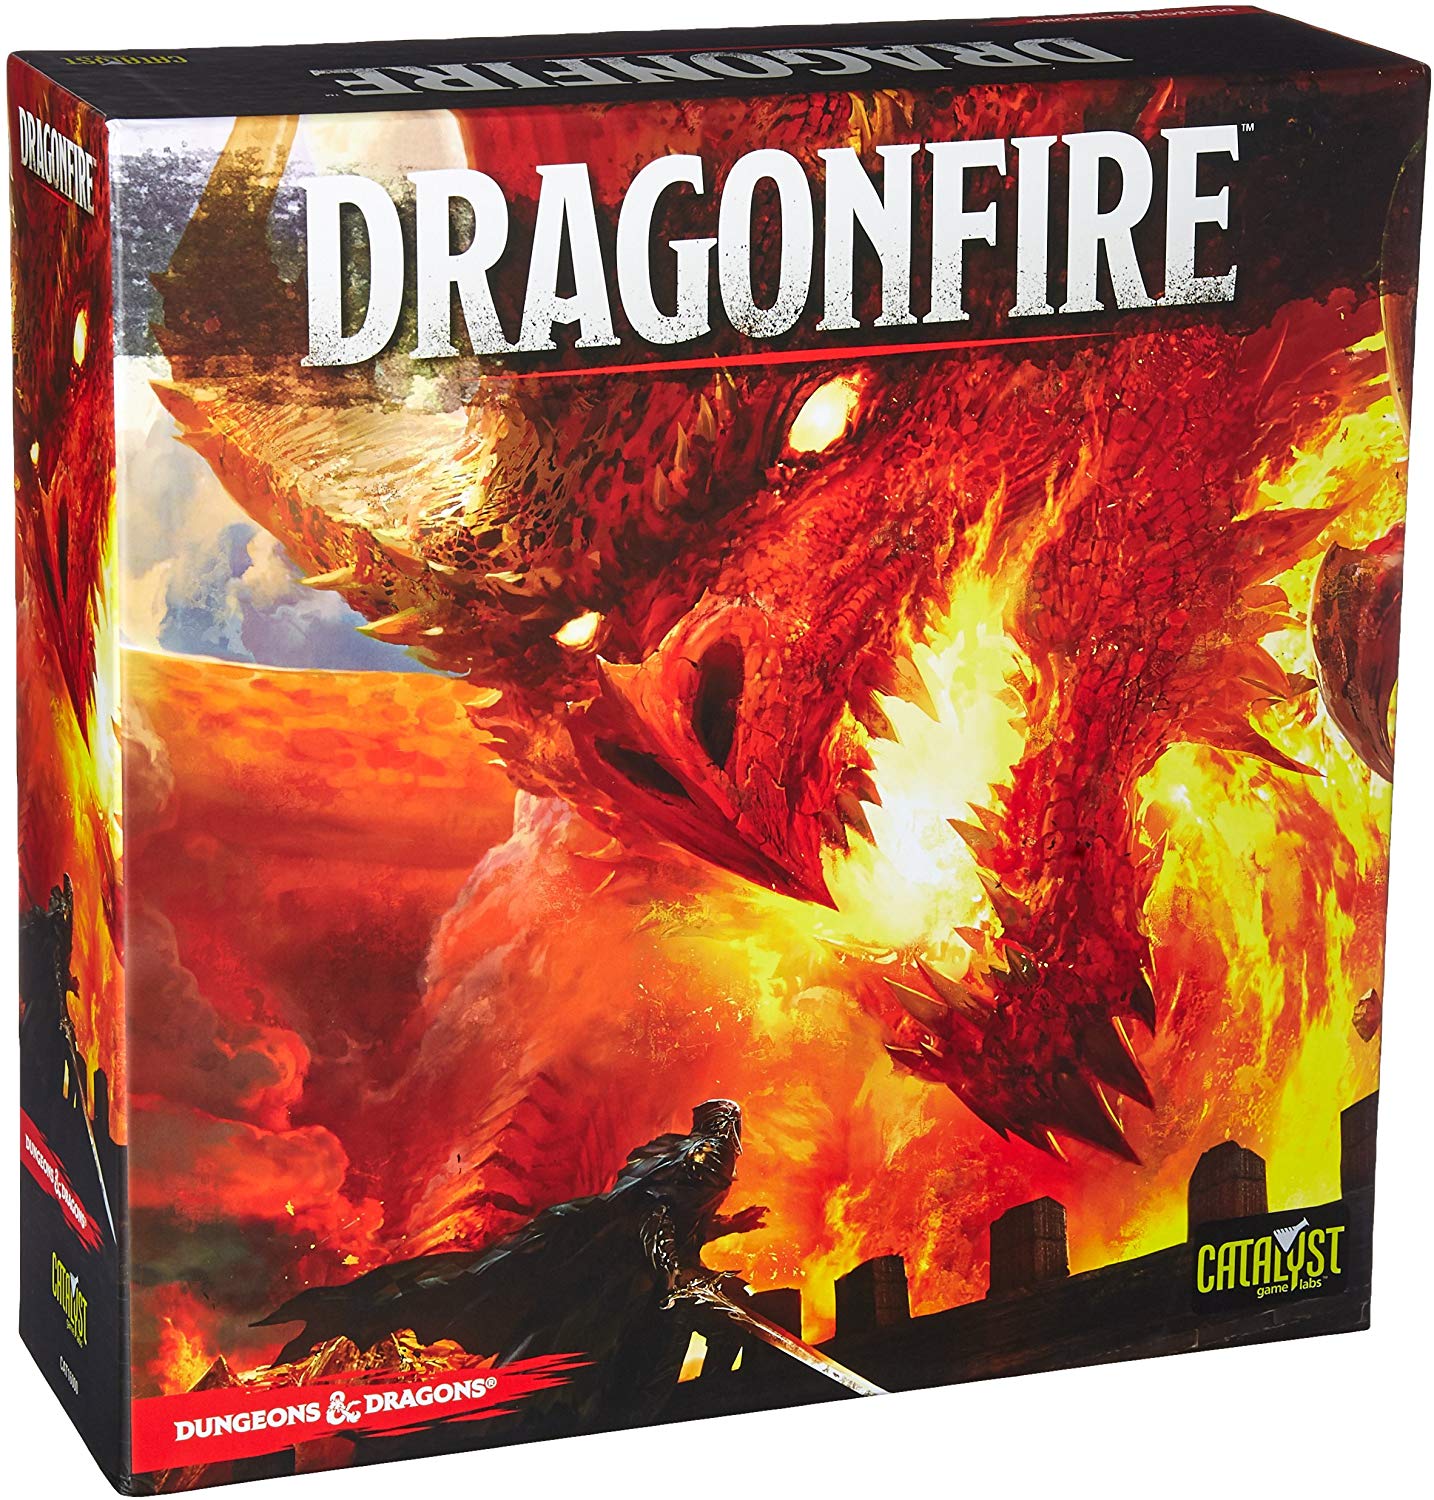 სამაგიდო თამაში დრეგონფაიერ (Dragonfire) სამაგიდო თამაში